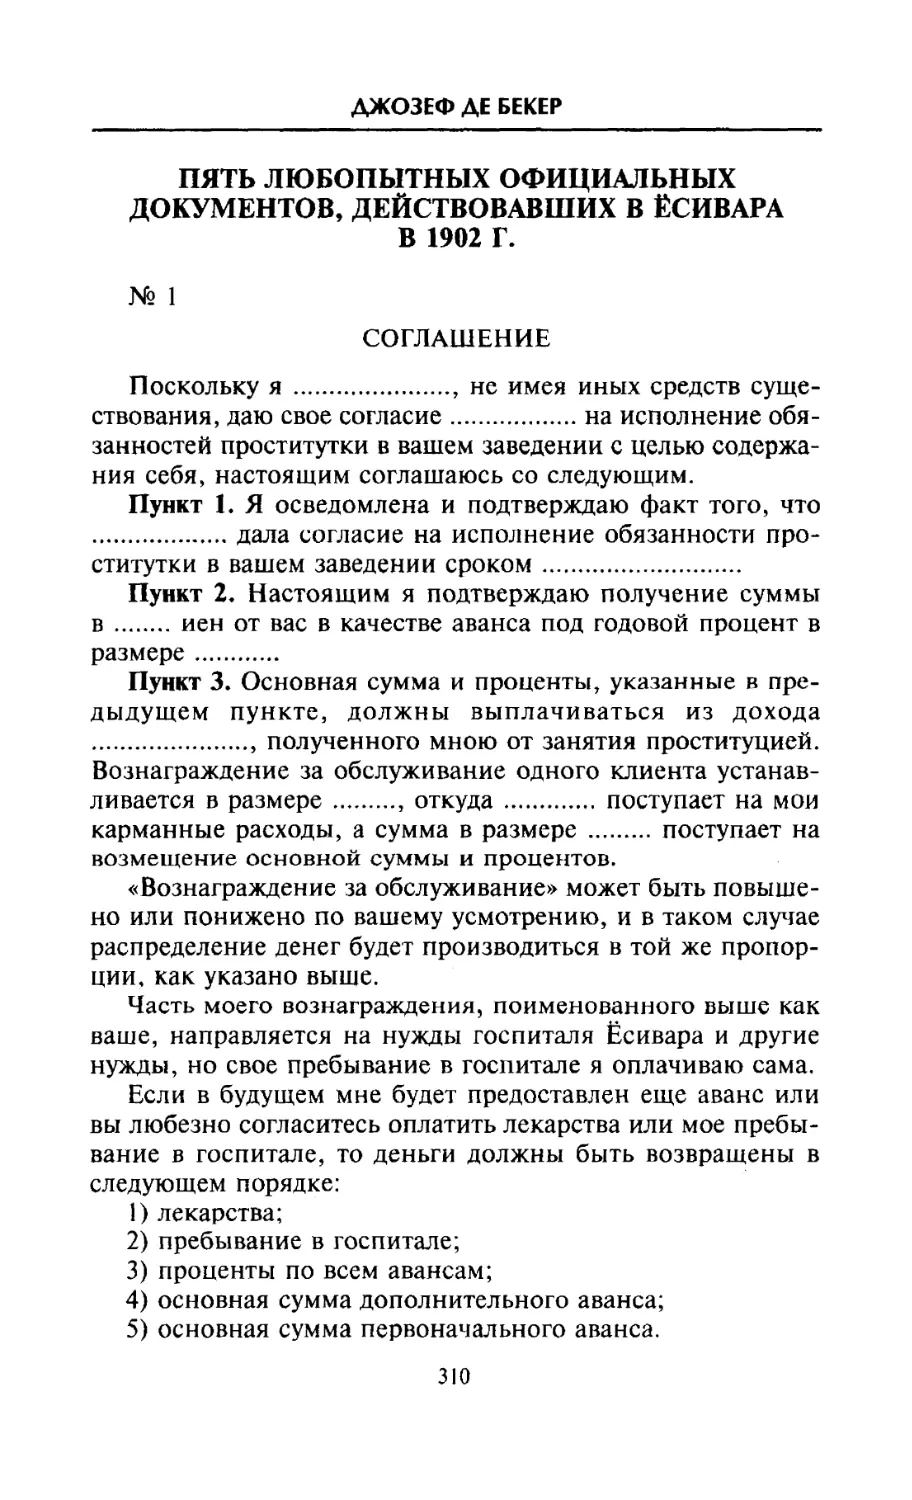 Пять любопытных официальных документов, действовавших в Ёсивара в 1902 г.